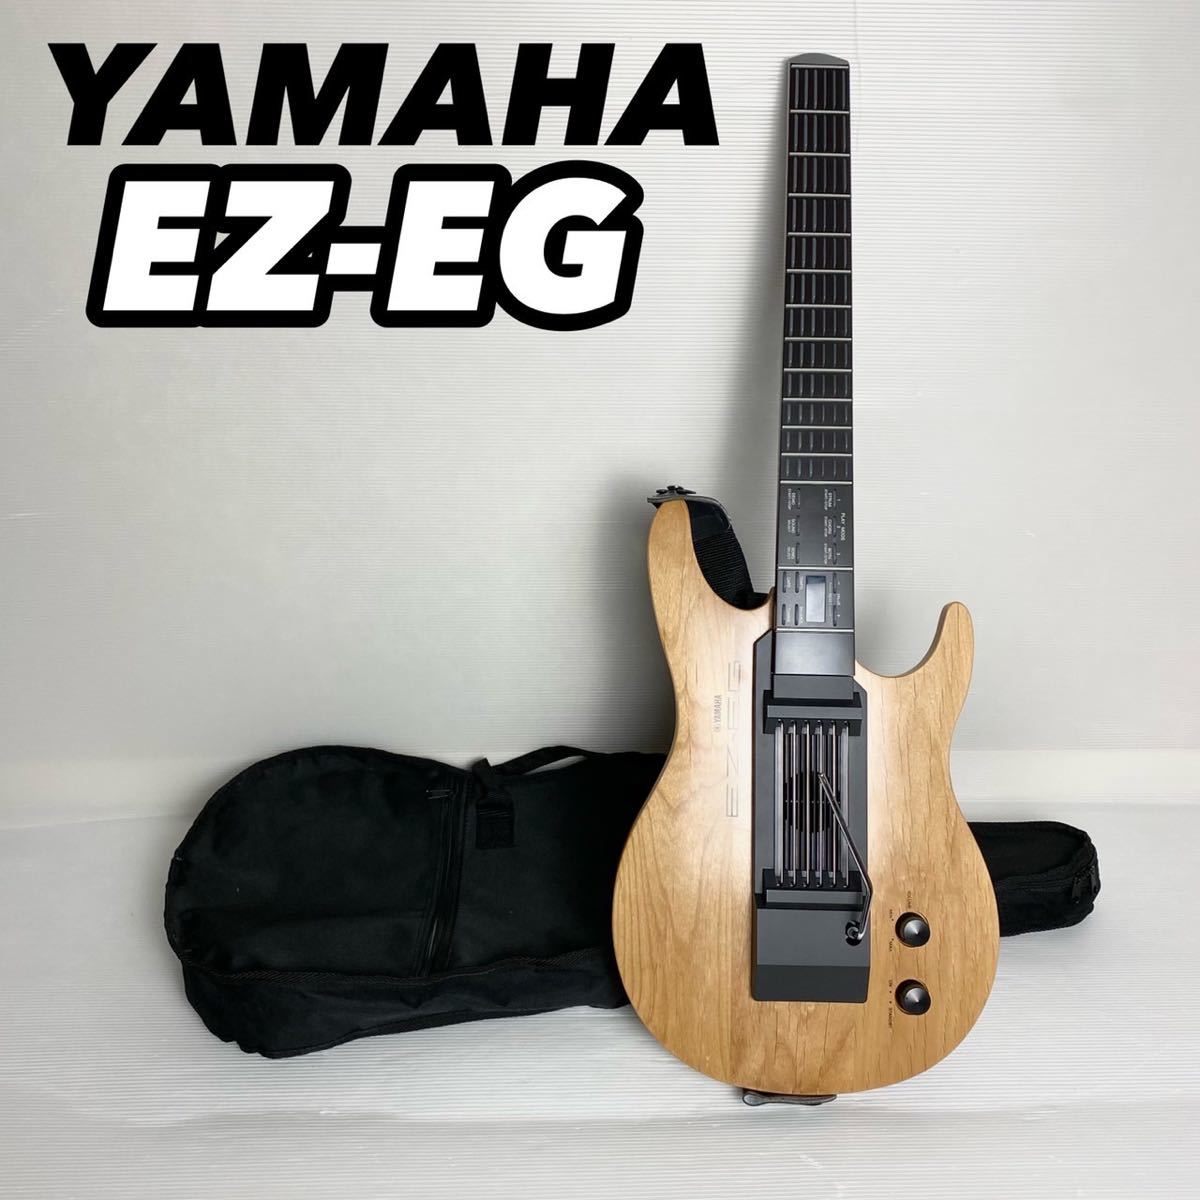 ヤフオク! -「ヤマハ ez-eg」(本体) (アコースティックギター)の落札 